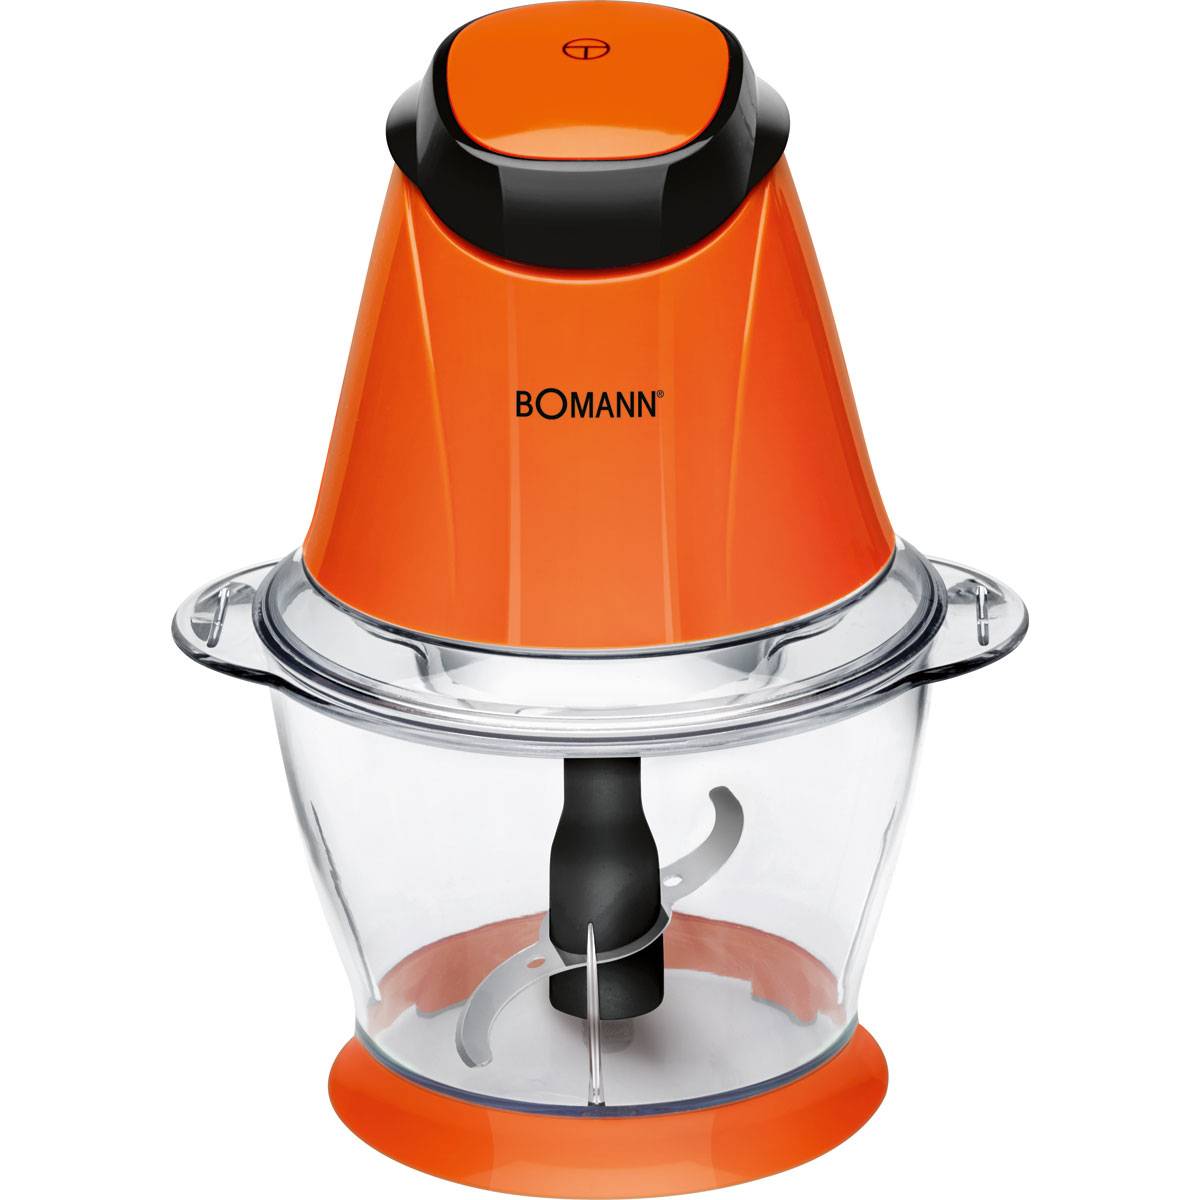 Bomann MZ 449 - Picadora multiusos, capacidad 1 l, función pica-hielo, 250 W, color naranja